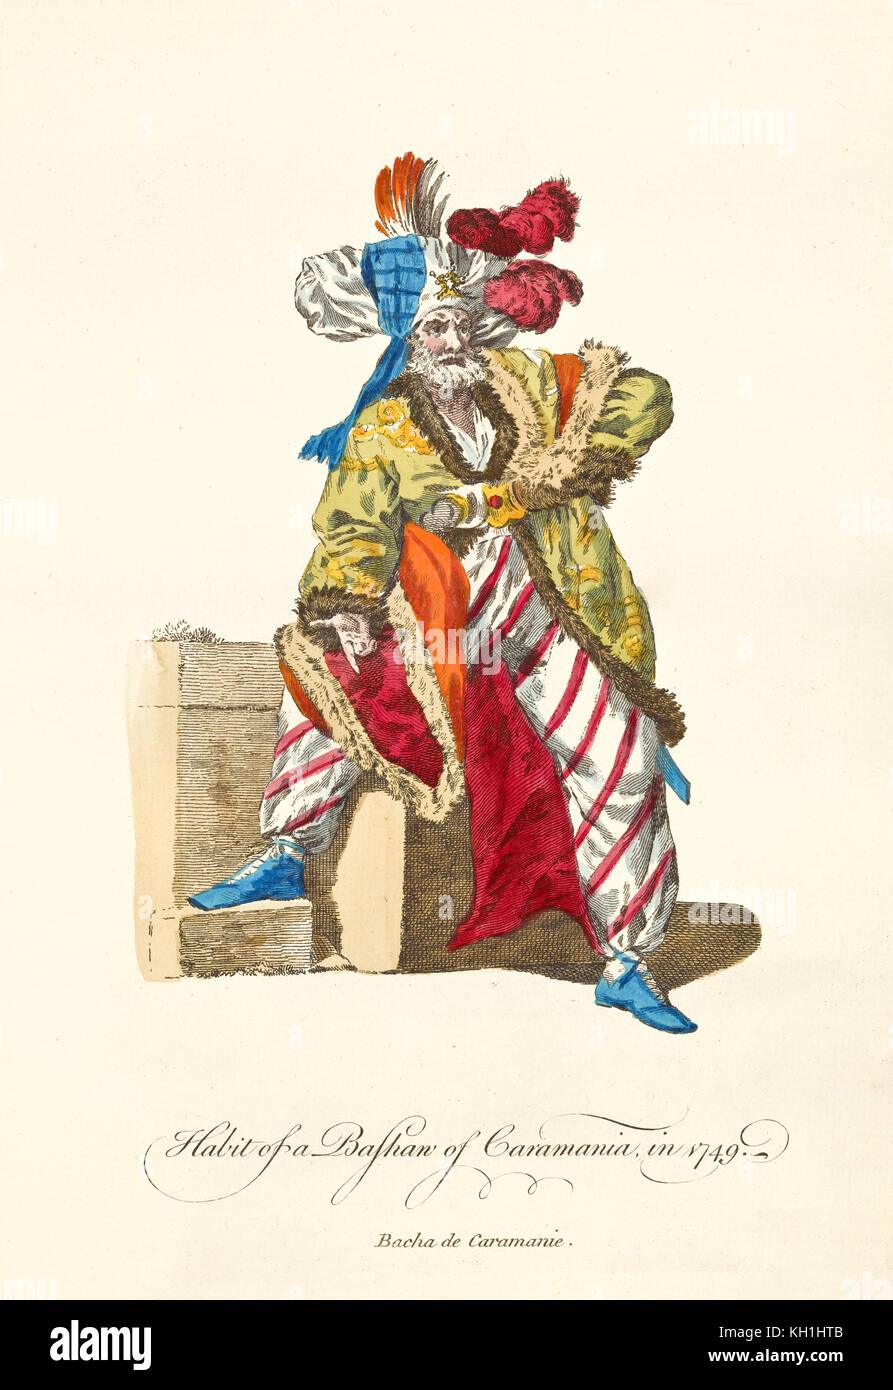 Vieux illustratiion de Caramania Pasha (Sud de l'Anatolie) en vêtements traditionnels en 1749. Par J.M. Vien, publ. T. Jefferys, Londres, 1757-1772 Banque D'Images